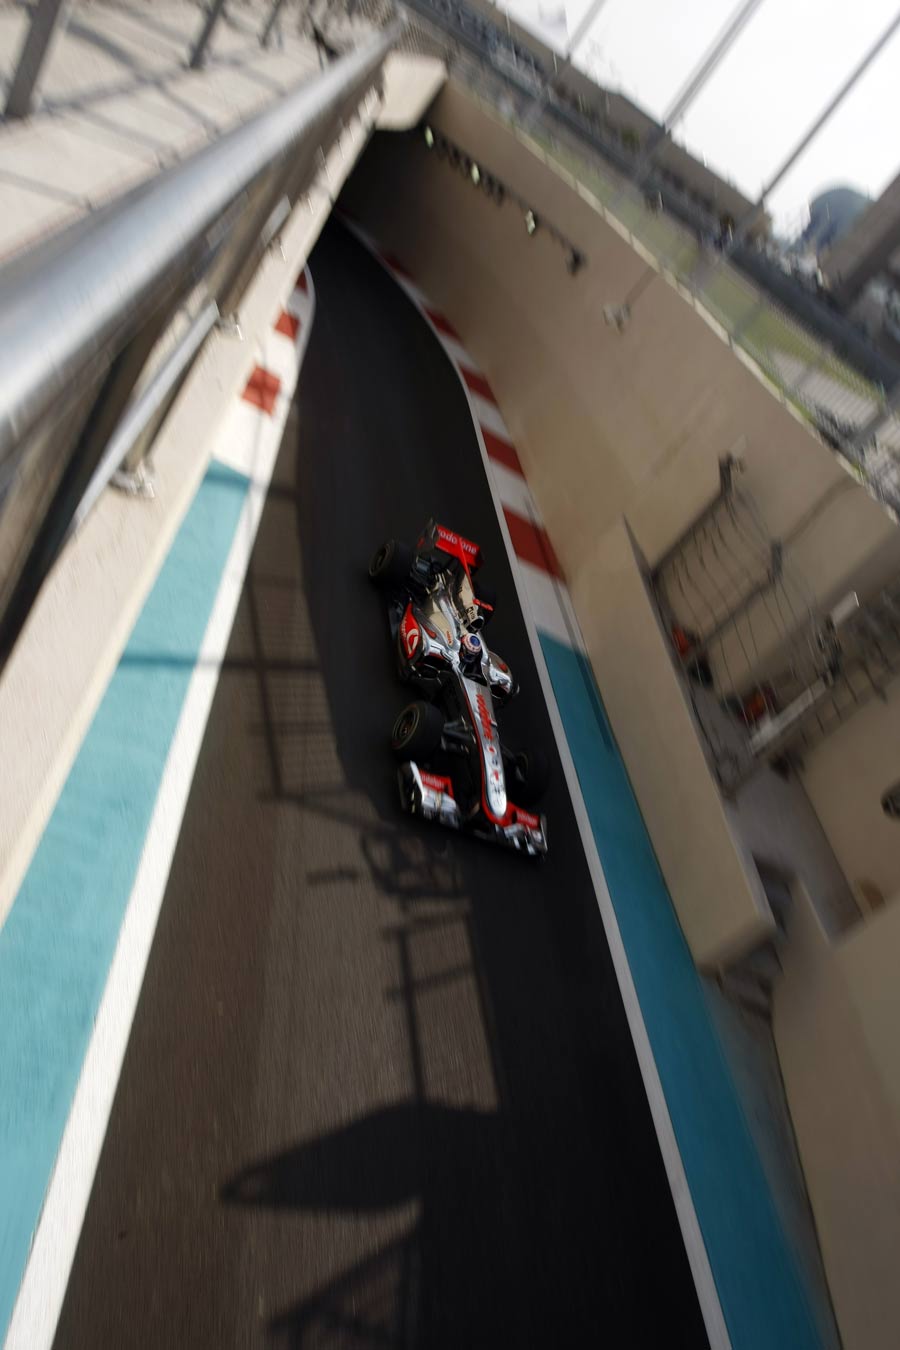 Jenson Button leaves the pitlane